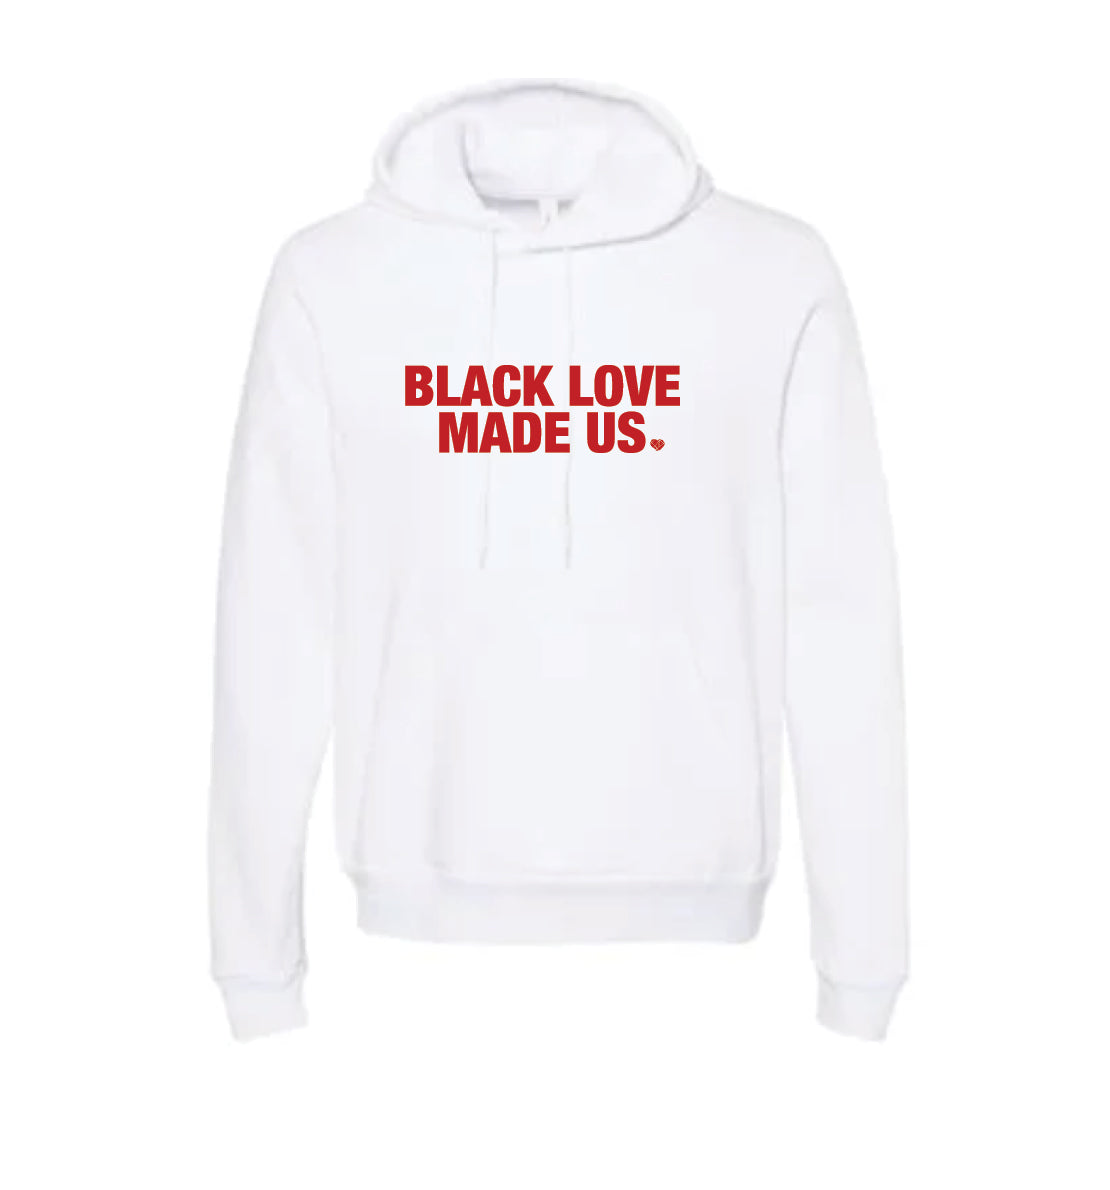 Black Love Made Us Hoody